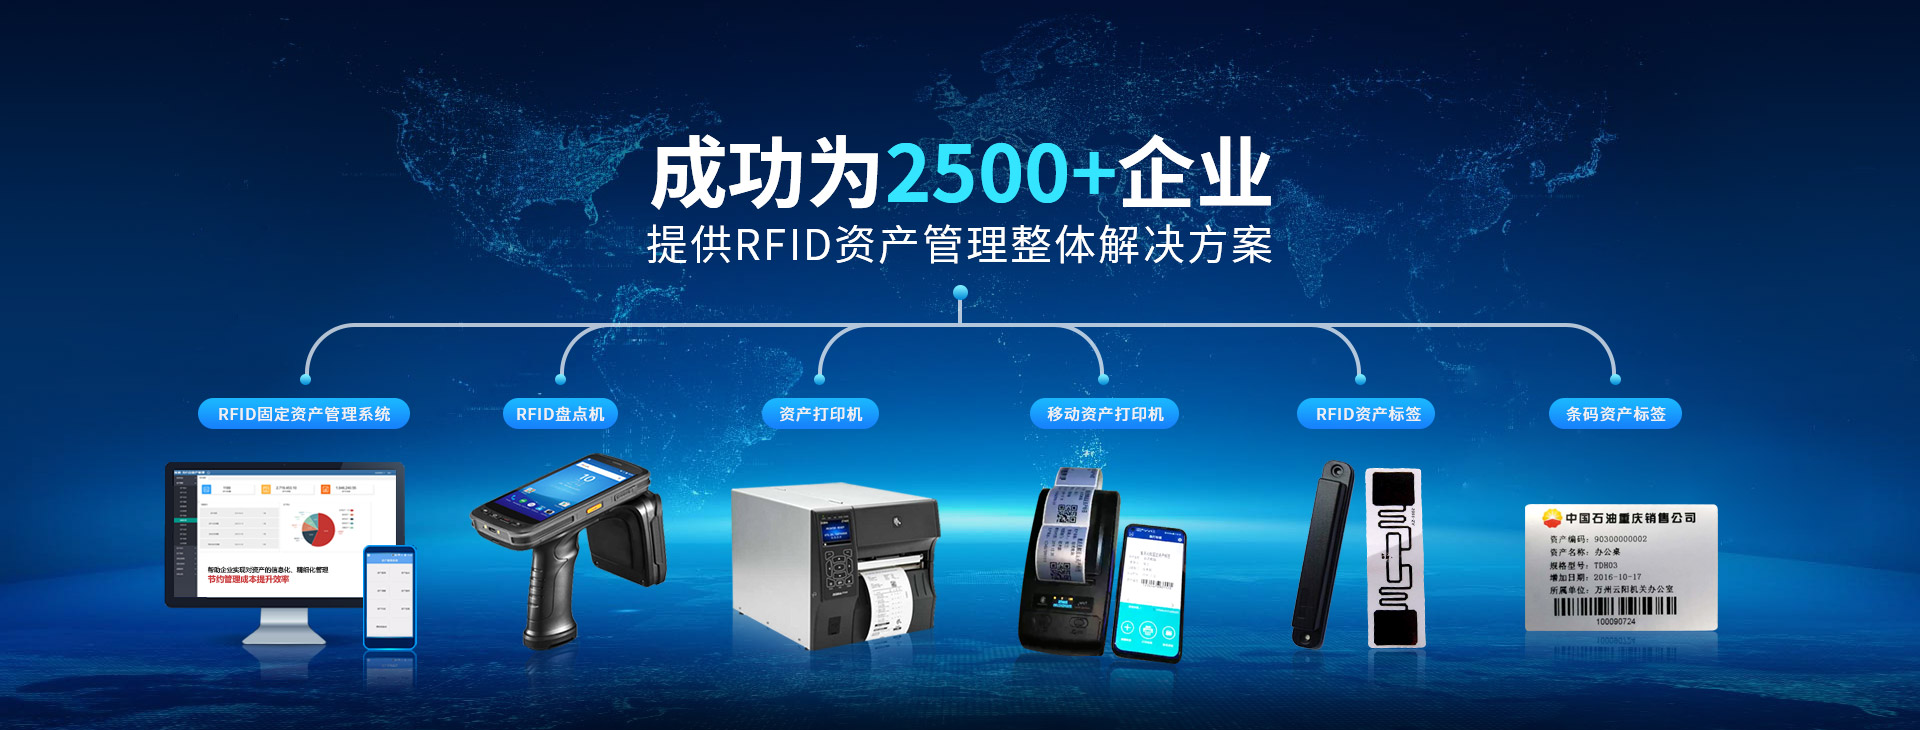 兆麟成功為2500+企業(yè)提供RFID資產(chǎn)管理整體解決方案